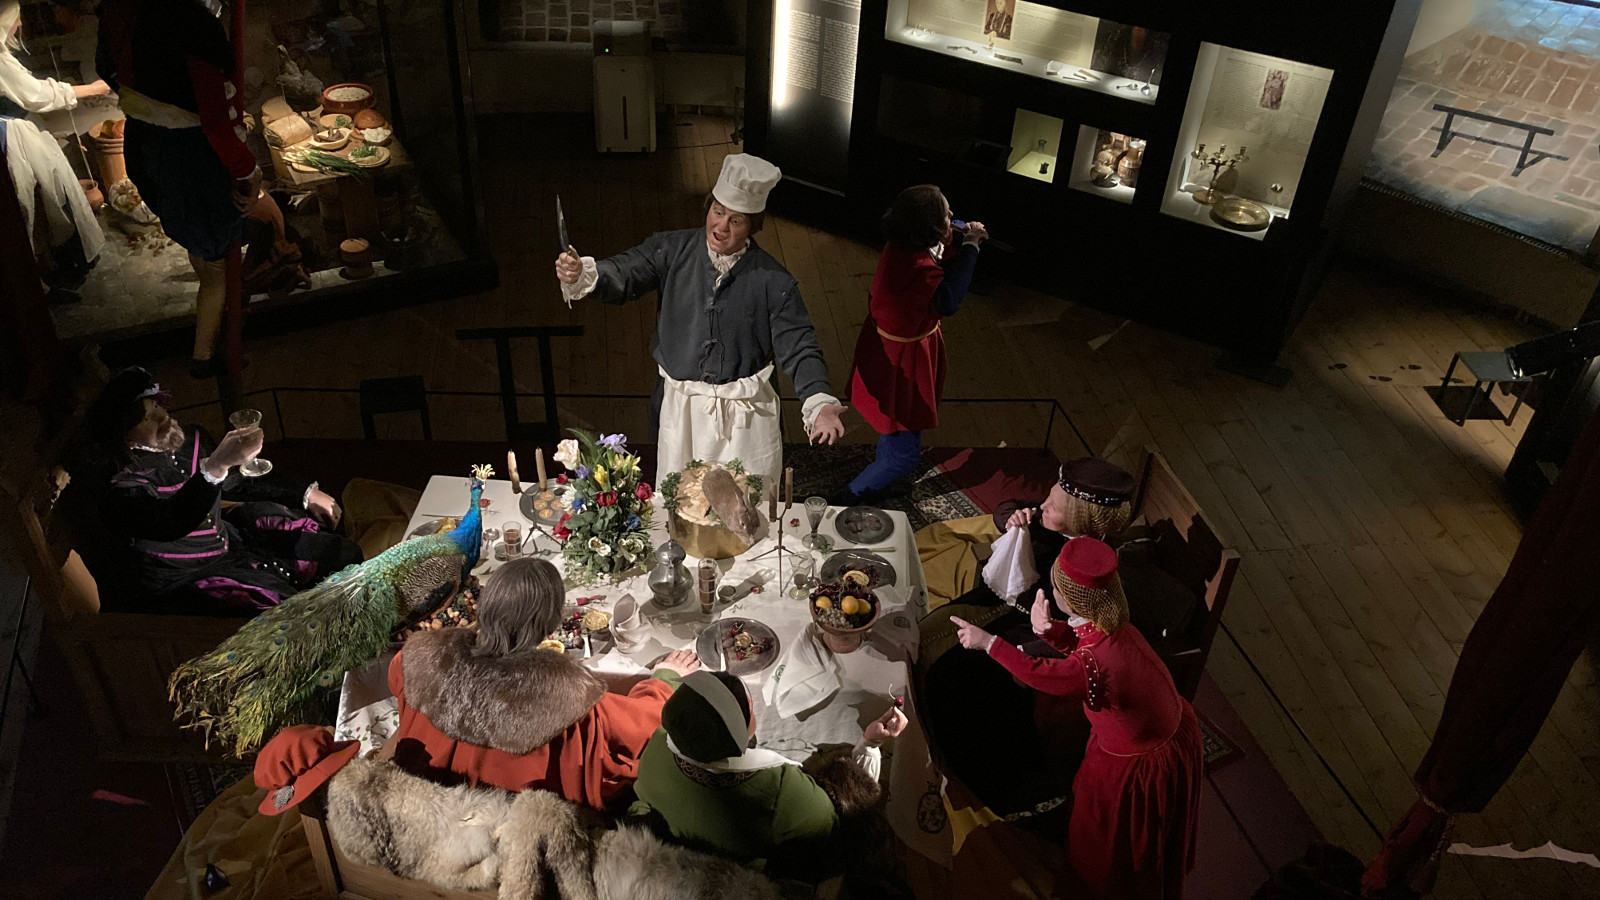 Kuvassa on katettu pöytä ja sen ympärillä ruokailijoita sekä kokki selostamassa ruuista. Henkilöt ja ruoka ovat nukkeja ja ruoka keinotekoista.